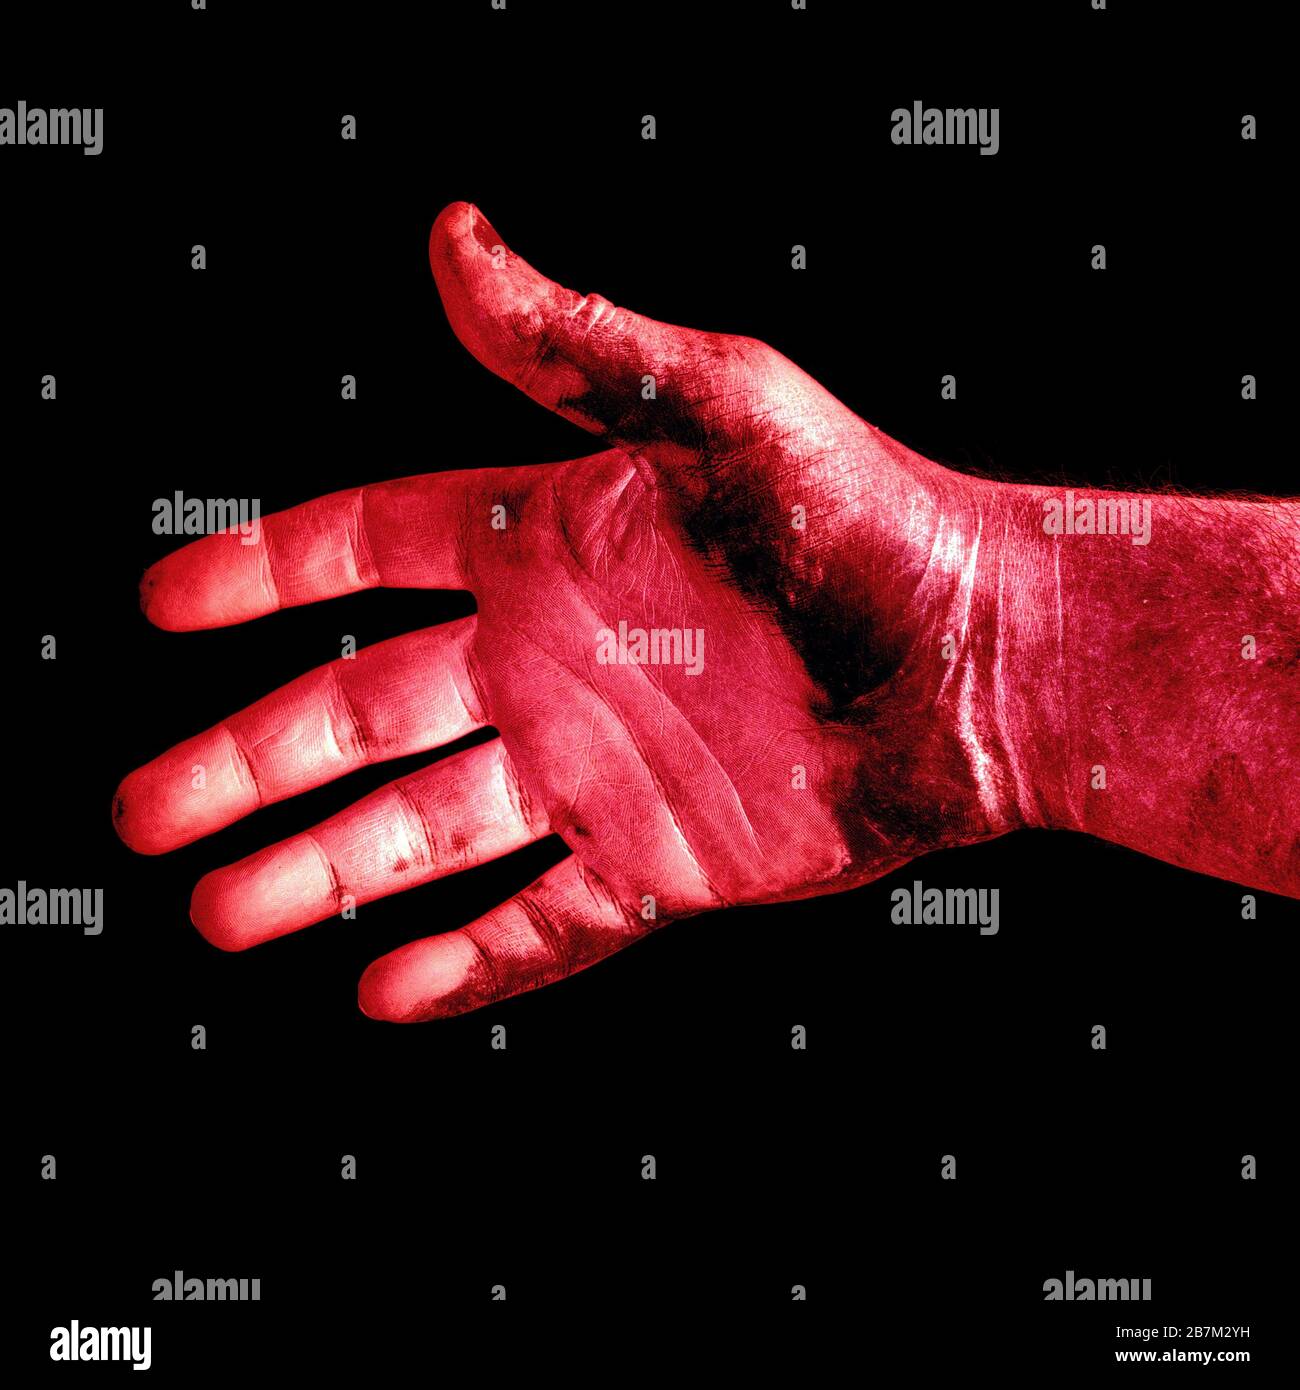 foto abstracta de una mano masculina roja sucia aislada sobre un fondo negro de cerca Foto de stock